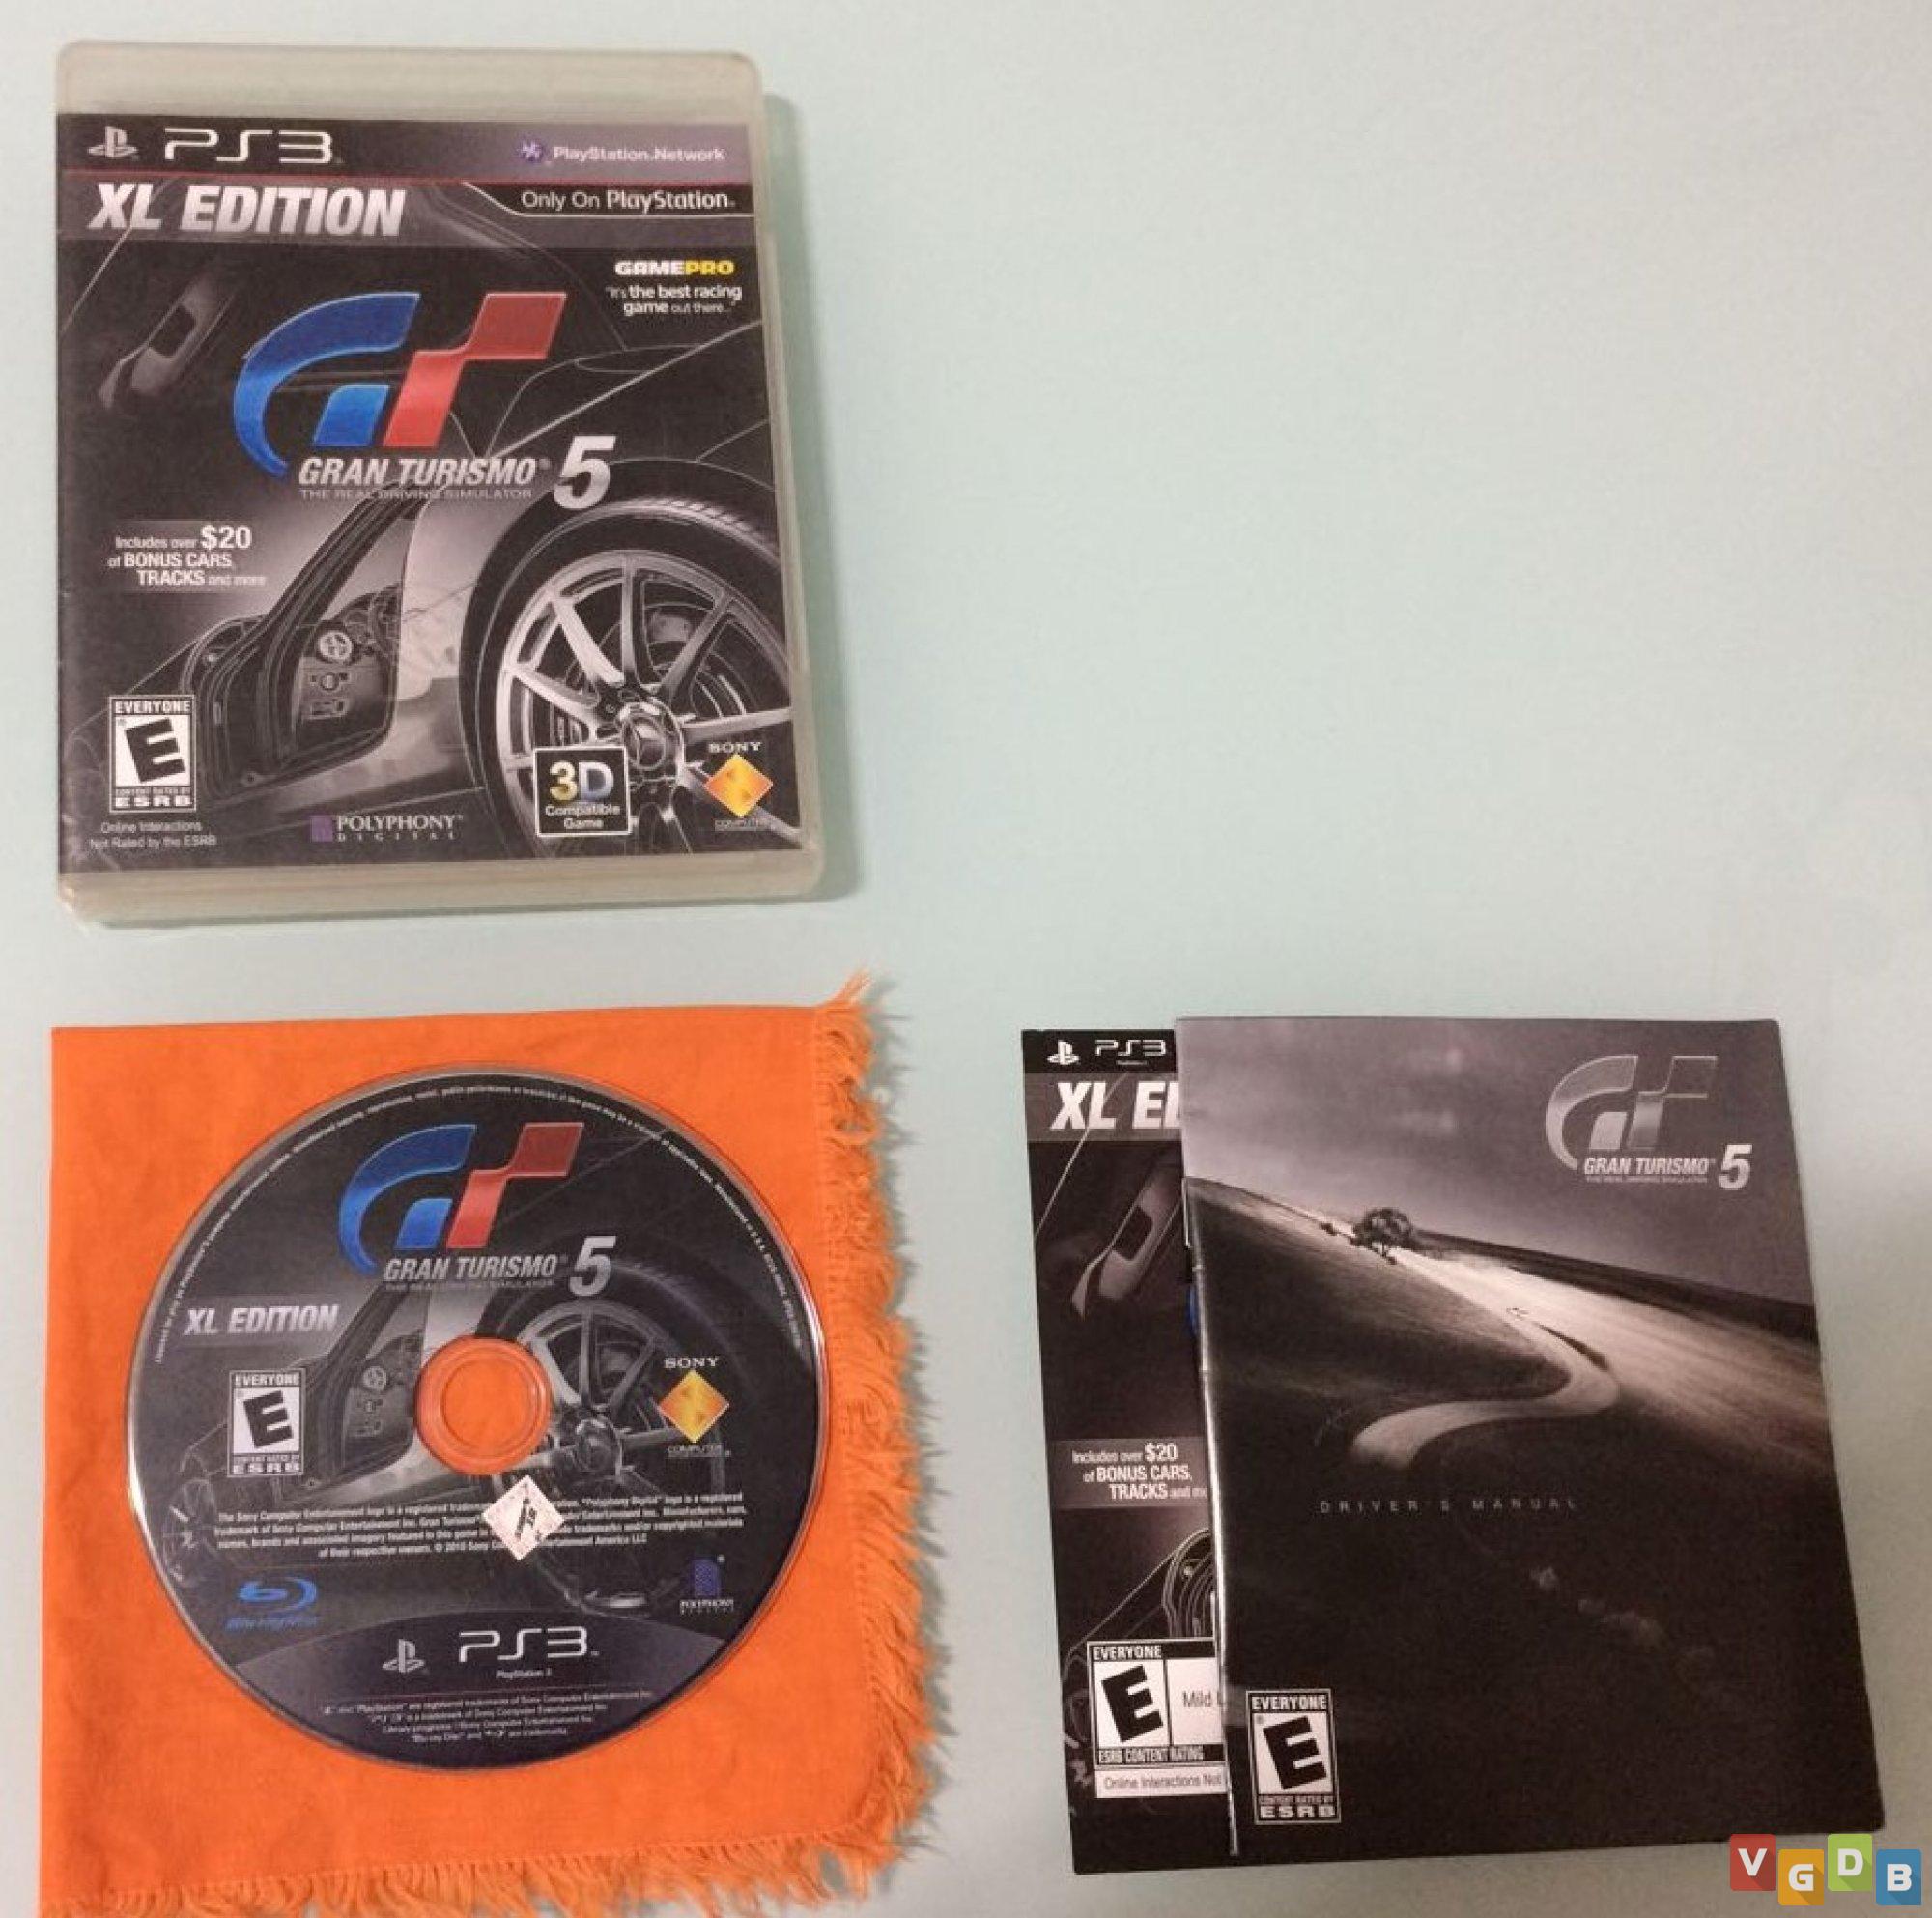 Gran Turismo 5 XL edition - PS3 - Sebo dos Games - 10 anos!